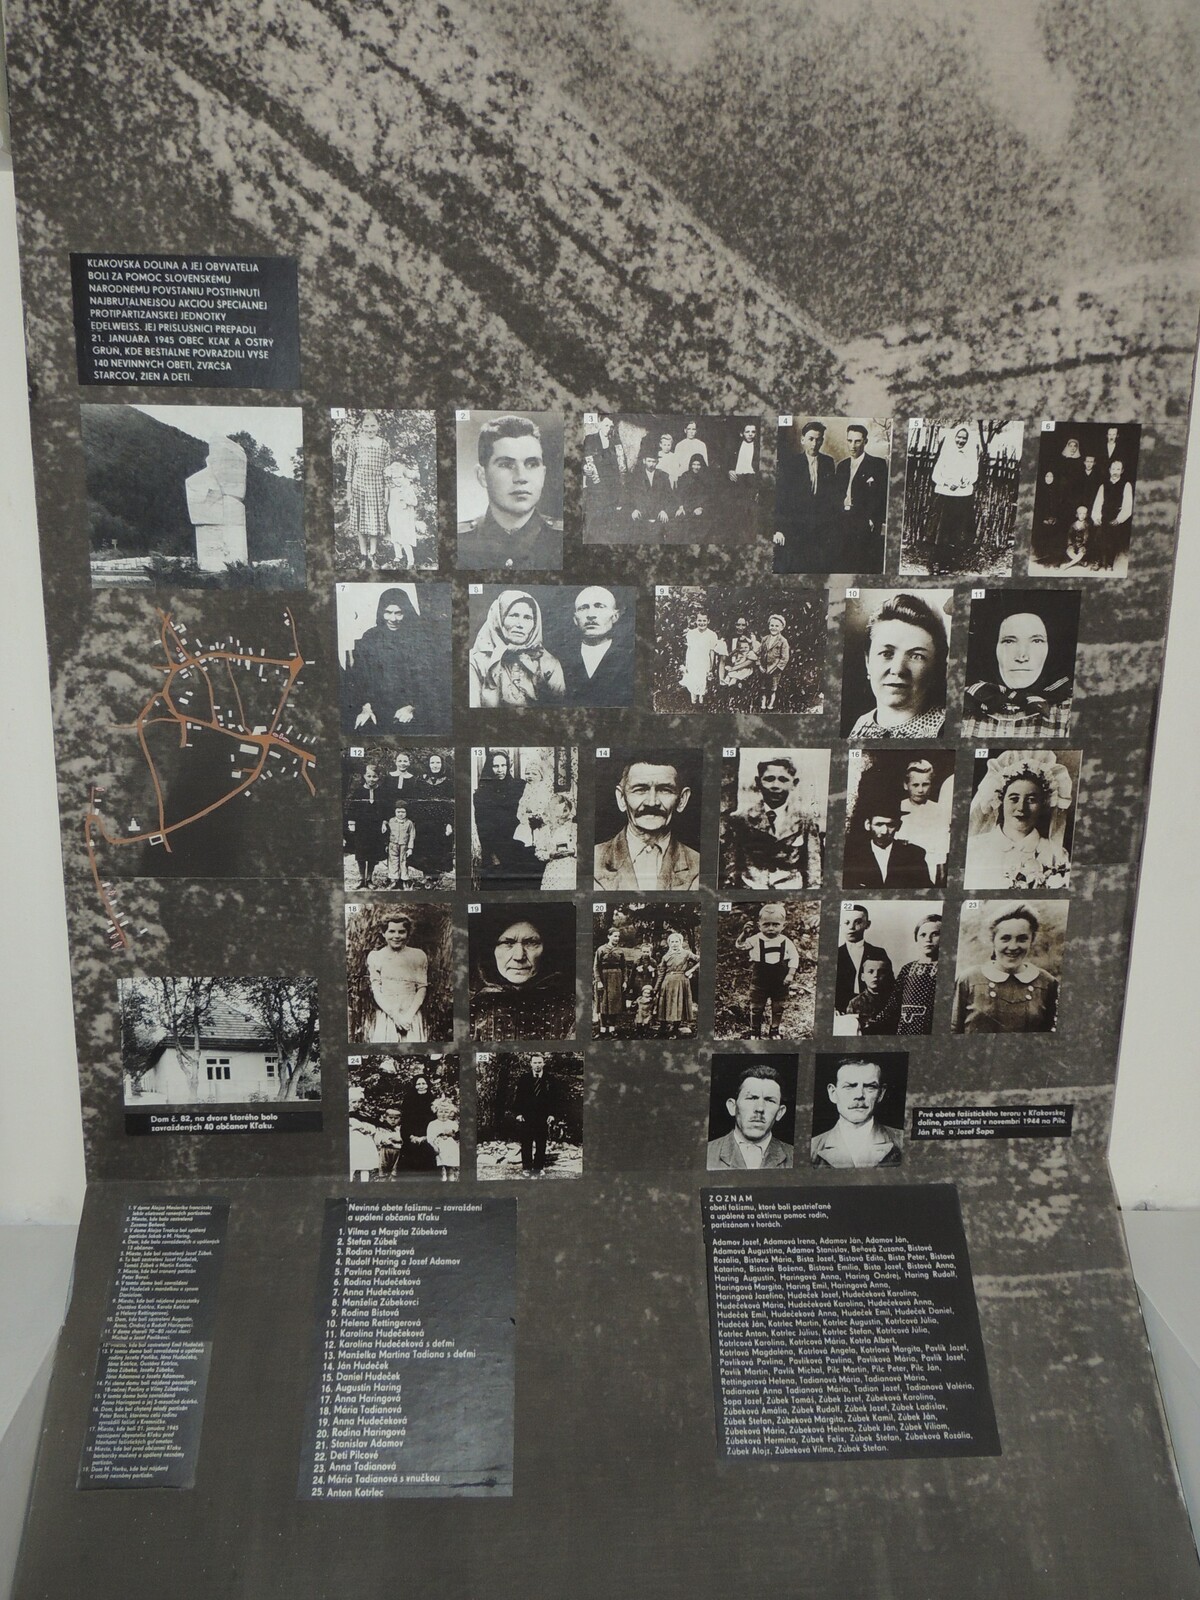 Obete nacistov z 21. januára 1945.